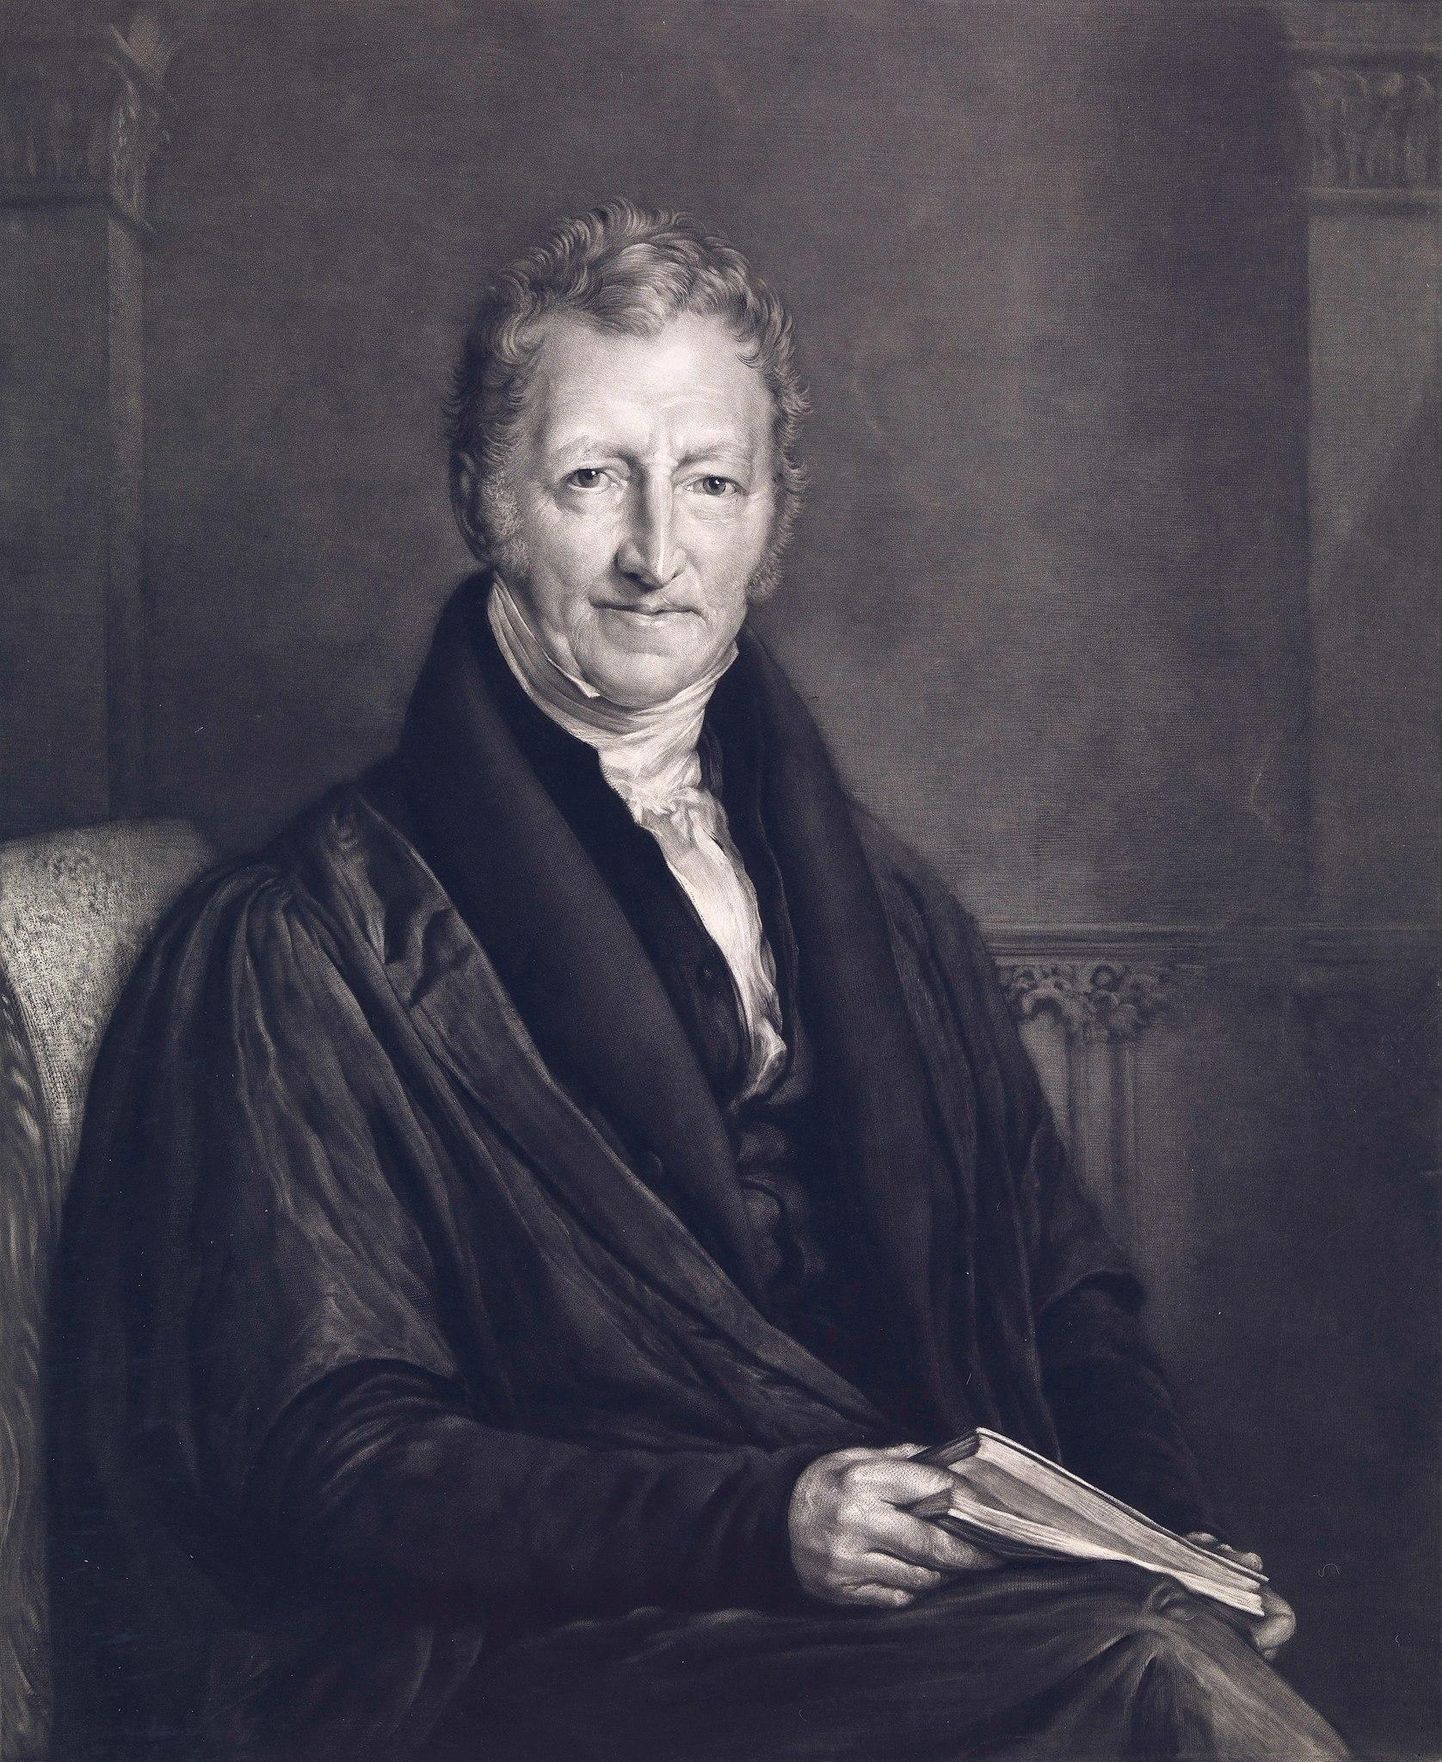 Inglise demograaf ja majandusteadlane Thomas Robert Malthus (1766–1834) on tuntud oma pessimistlike, kuid mõjukate vaadete poolest. Nende tõttu kutsuti teda ka hüüdnimega Dismal Science (sünge teadus).